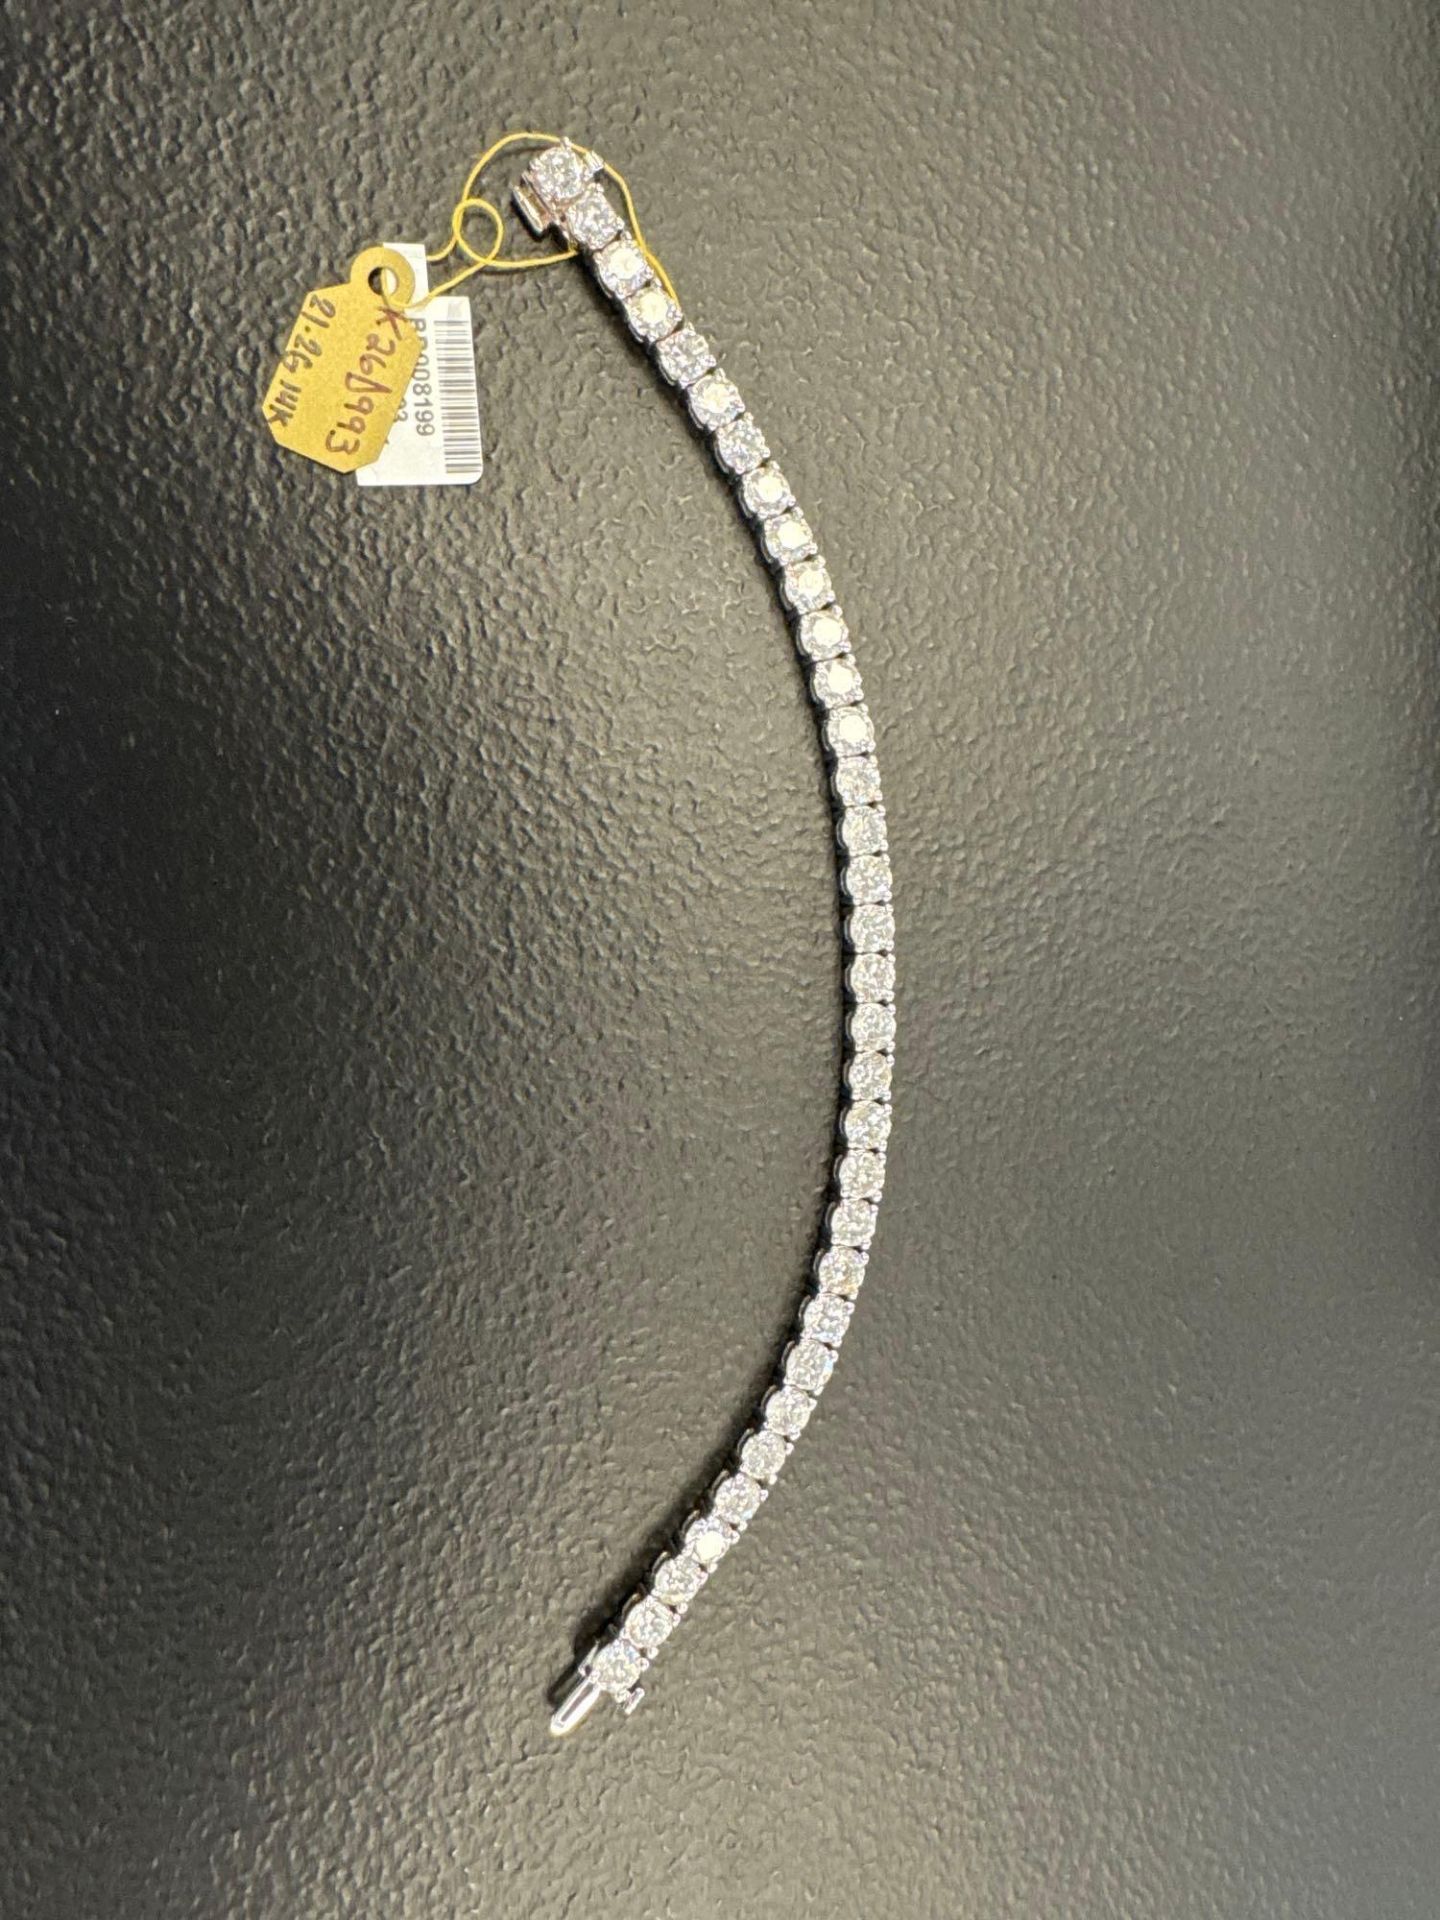 14KT Gold diamond bracelet, 33 diamonds, 16.15 carats - Image 2 of 15